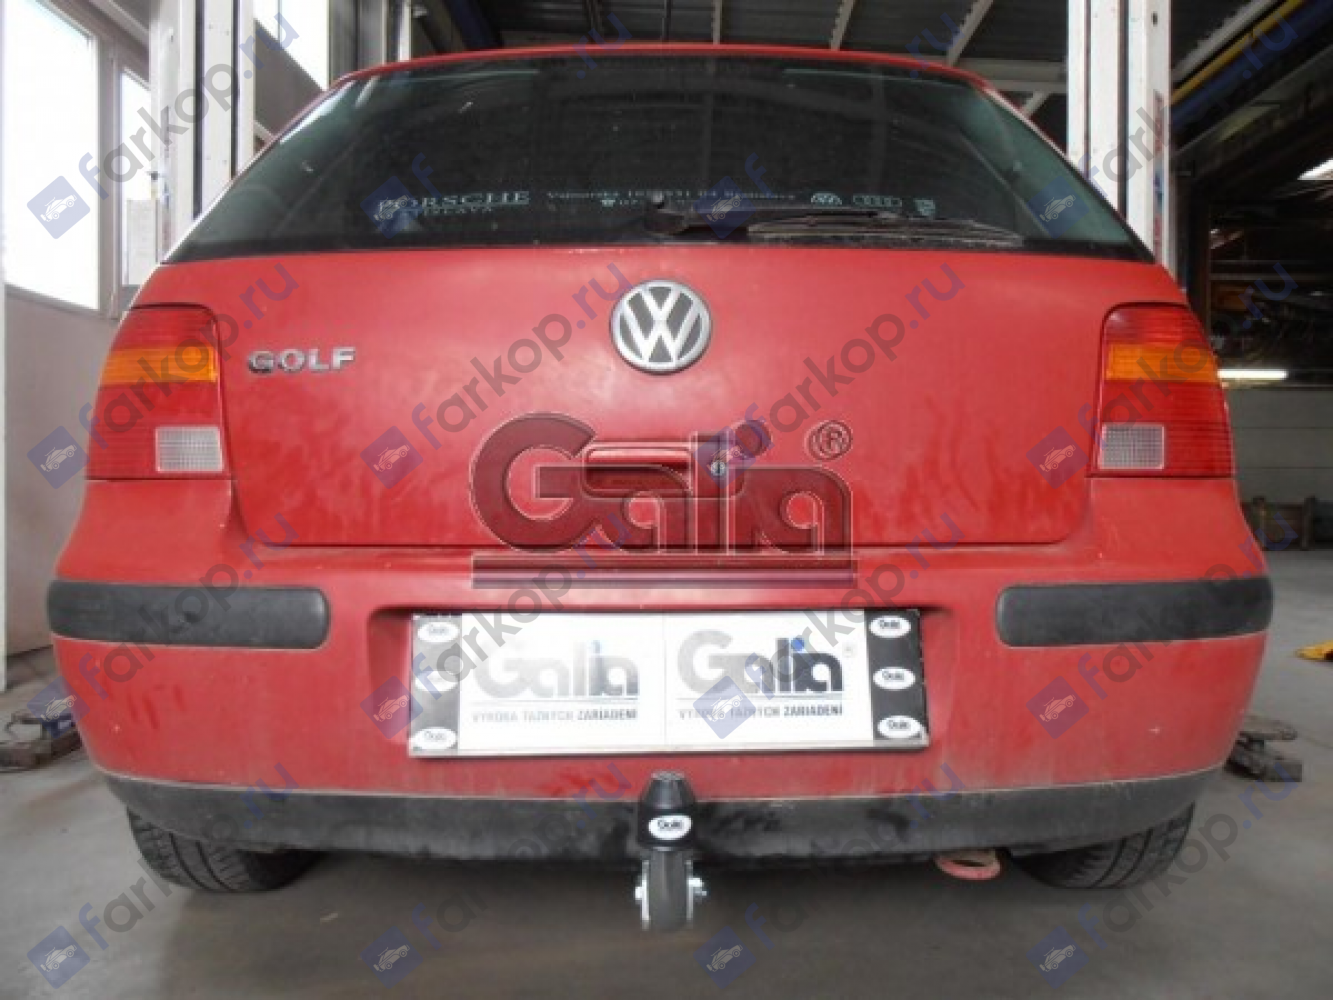 Фаркоп Galia для Volkswagen Golf (универсал)1997-2005 S087A в 